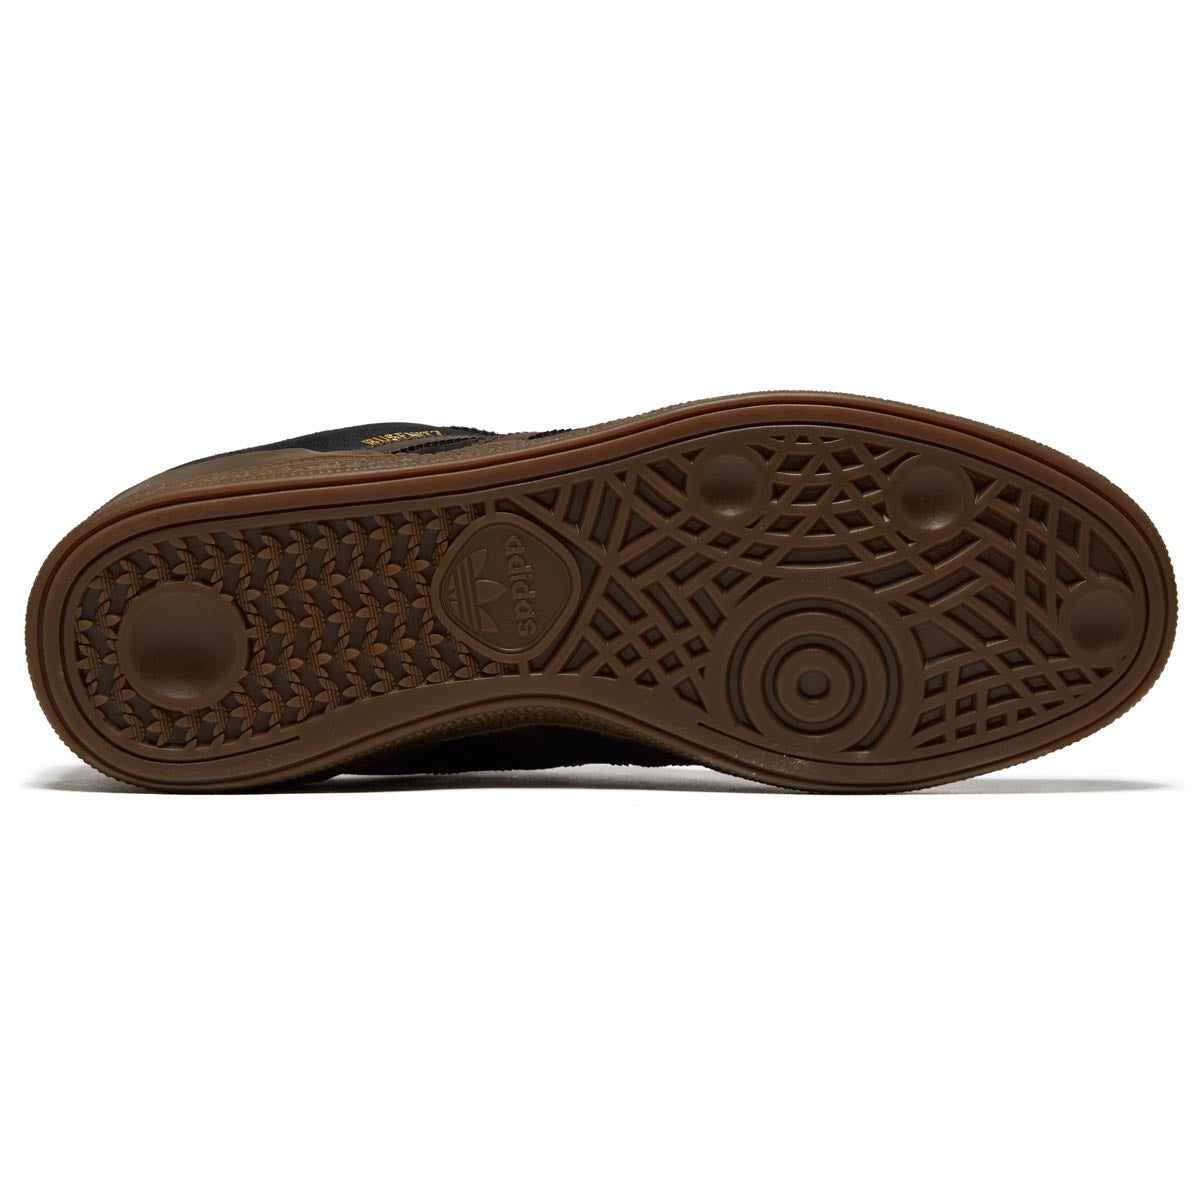 Adidas Busenitz Shoes - Black/Brown/Gold Metallic image 4